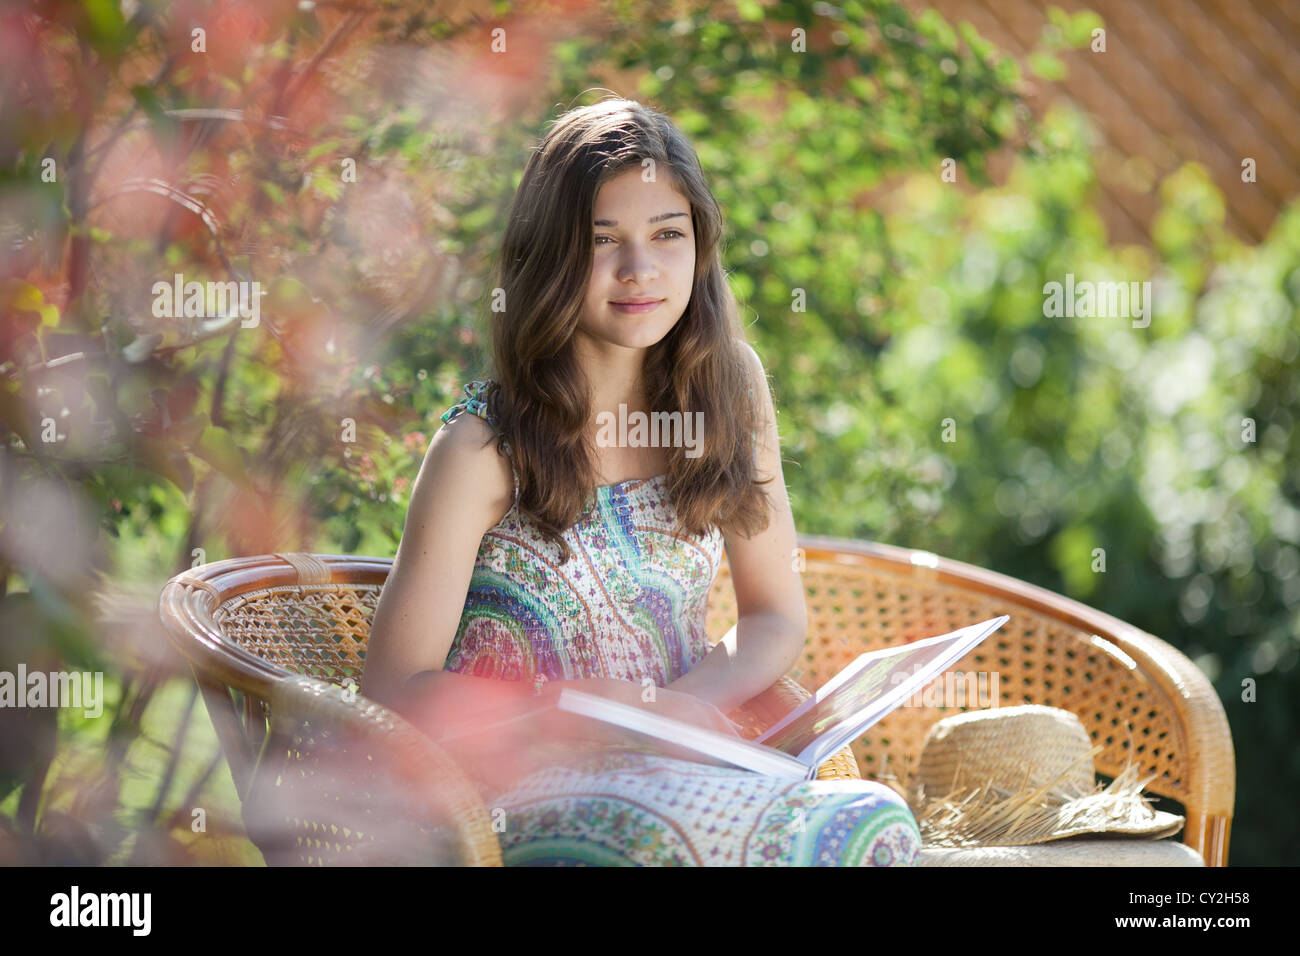 Lettura della ragazza prenota seduto nella sedia di vimini all' aperto nel giorno di estate Foto Stock